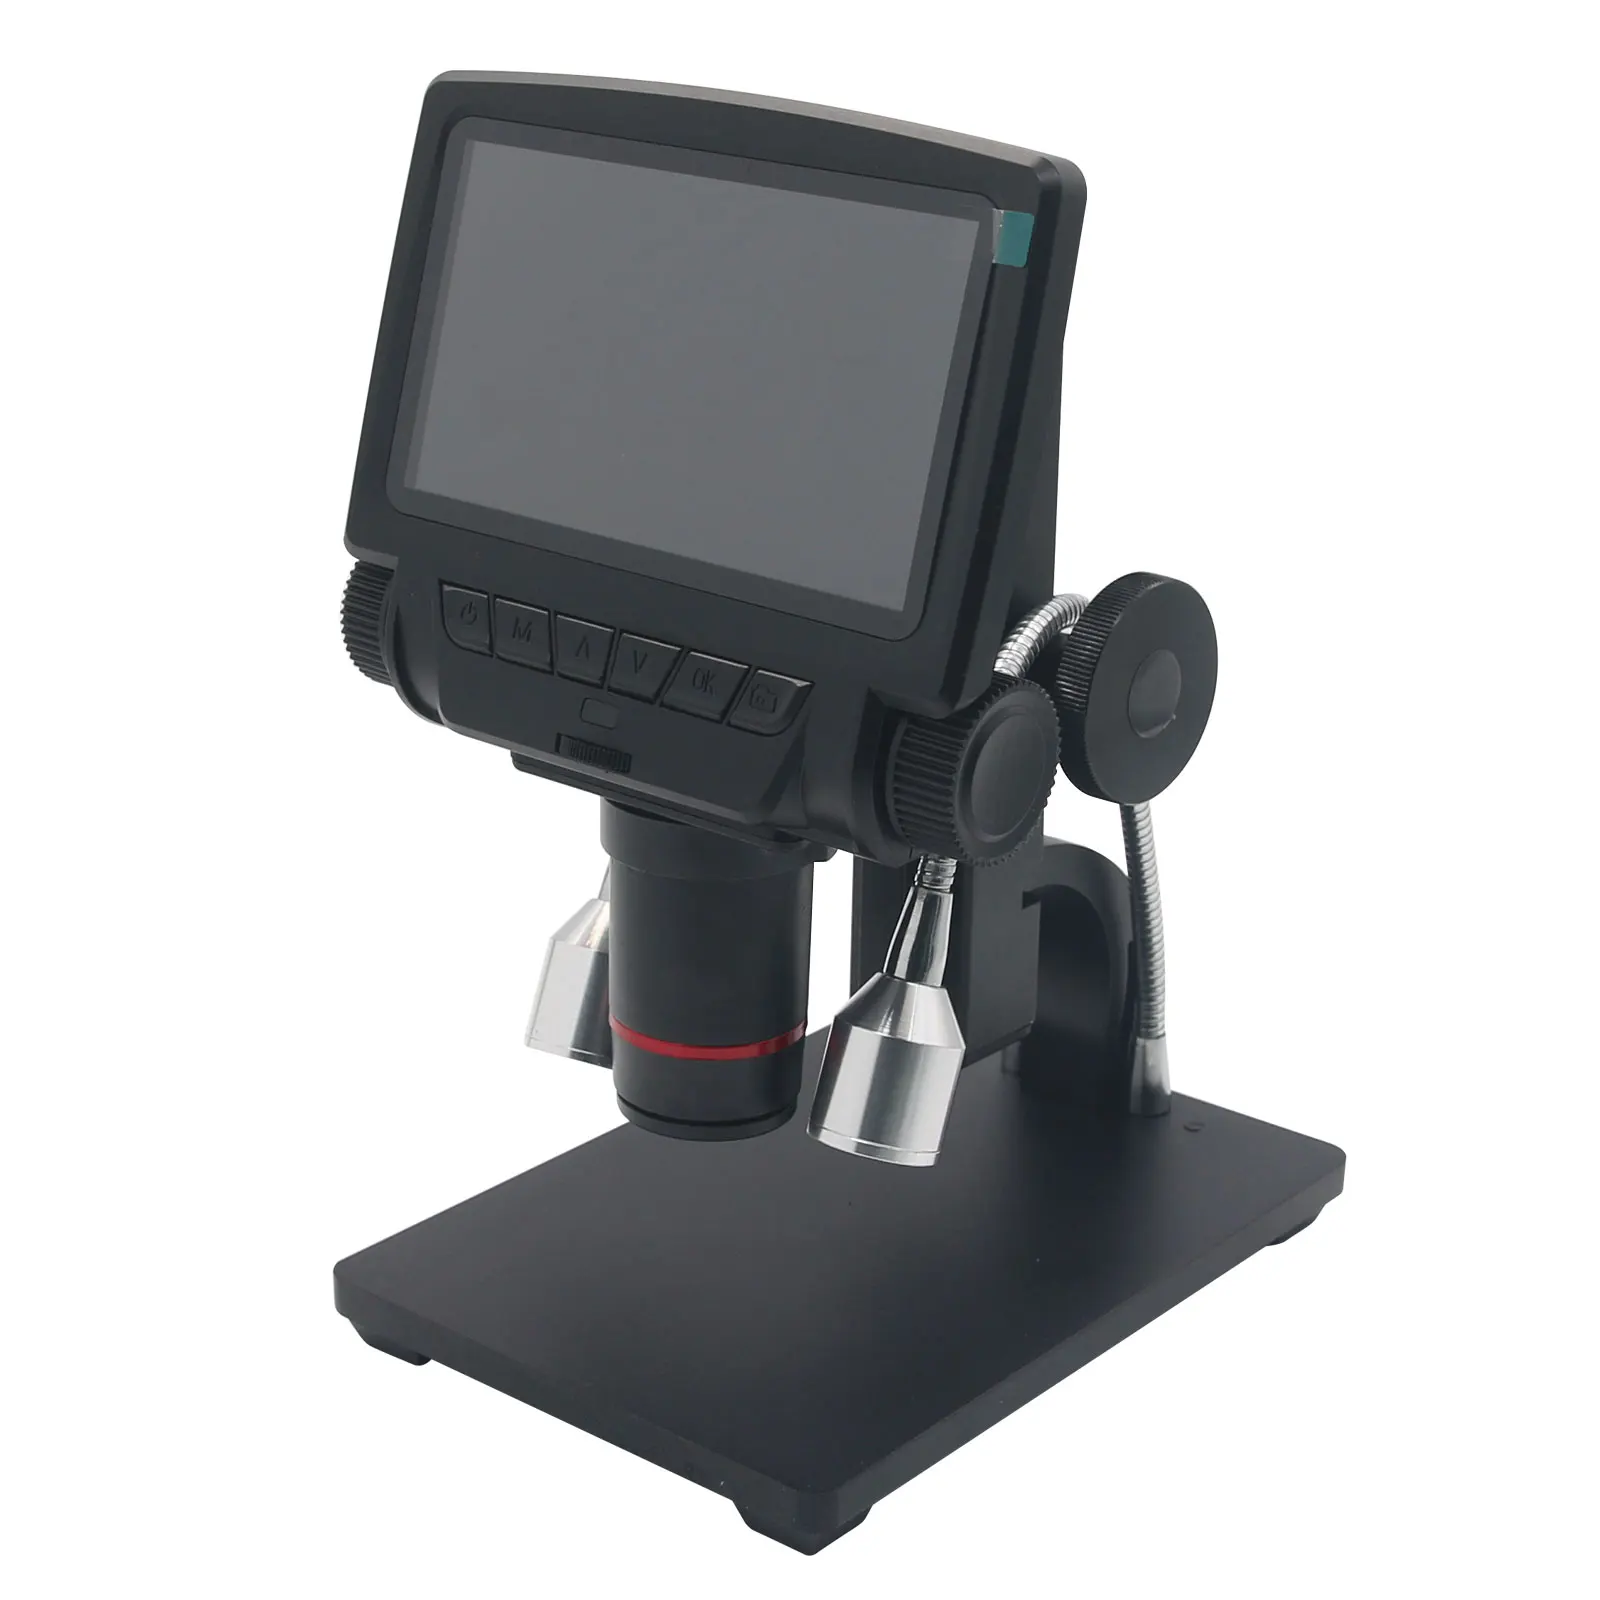 

Цифровой микроскоп ADSM301 Andonstar, USB микроскоп с 5 дюймовым экраном высокого разрешения для ремонта печатных плат